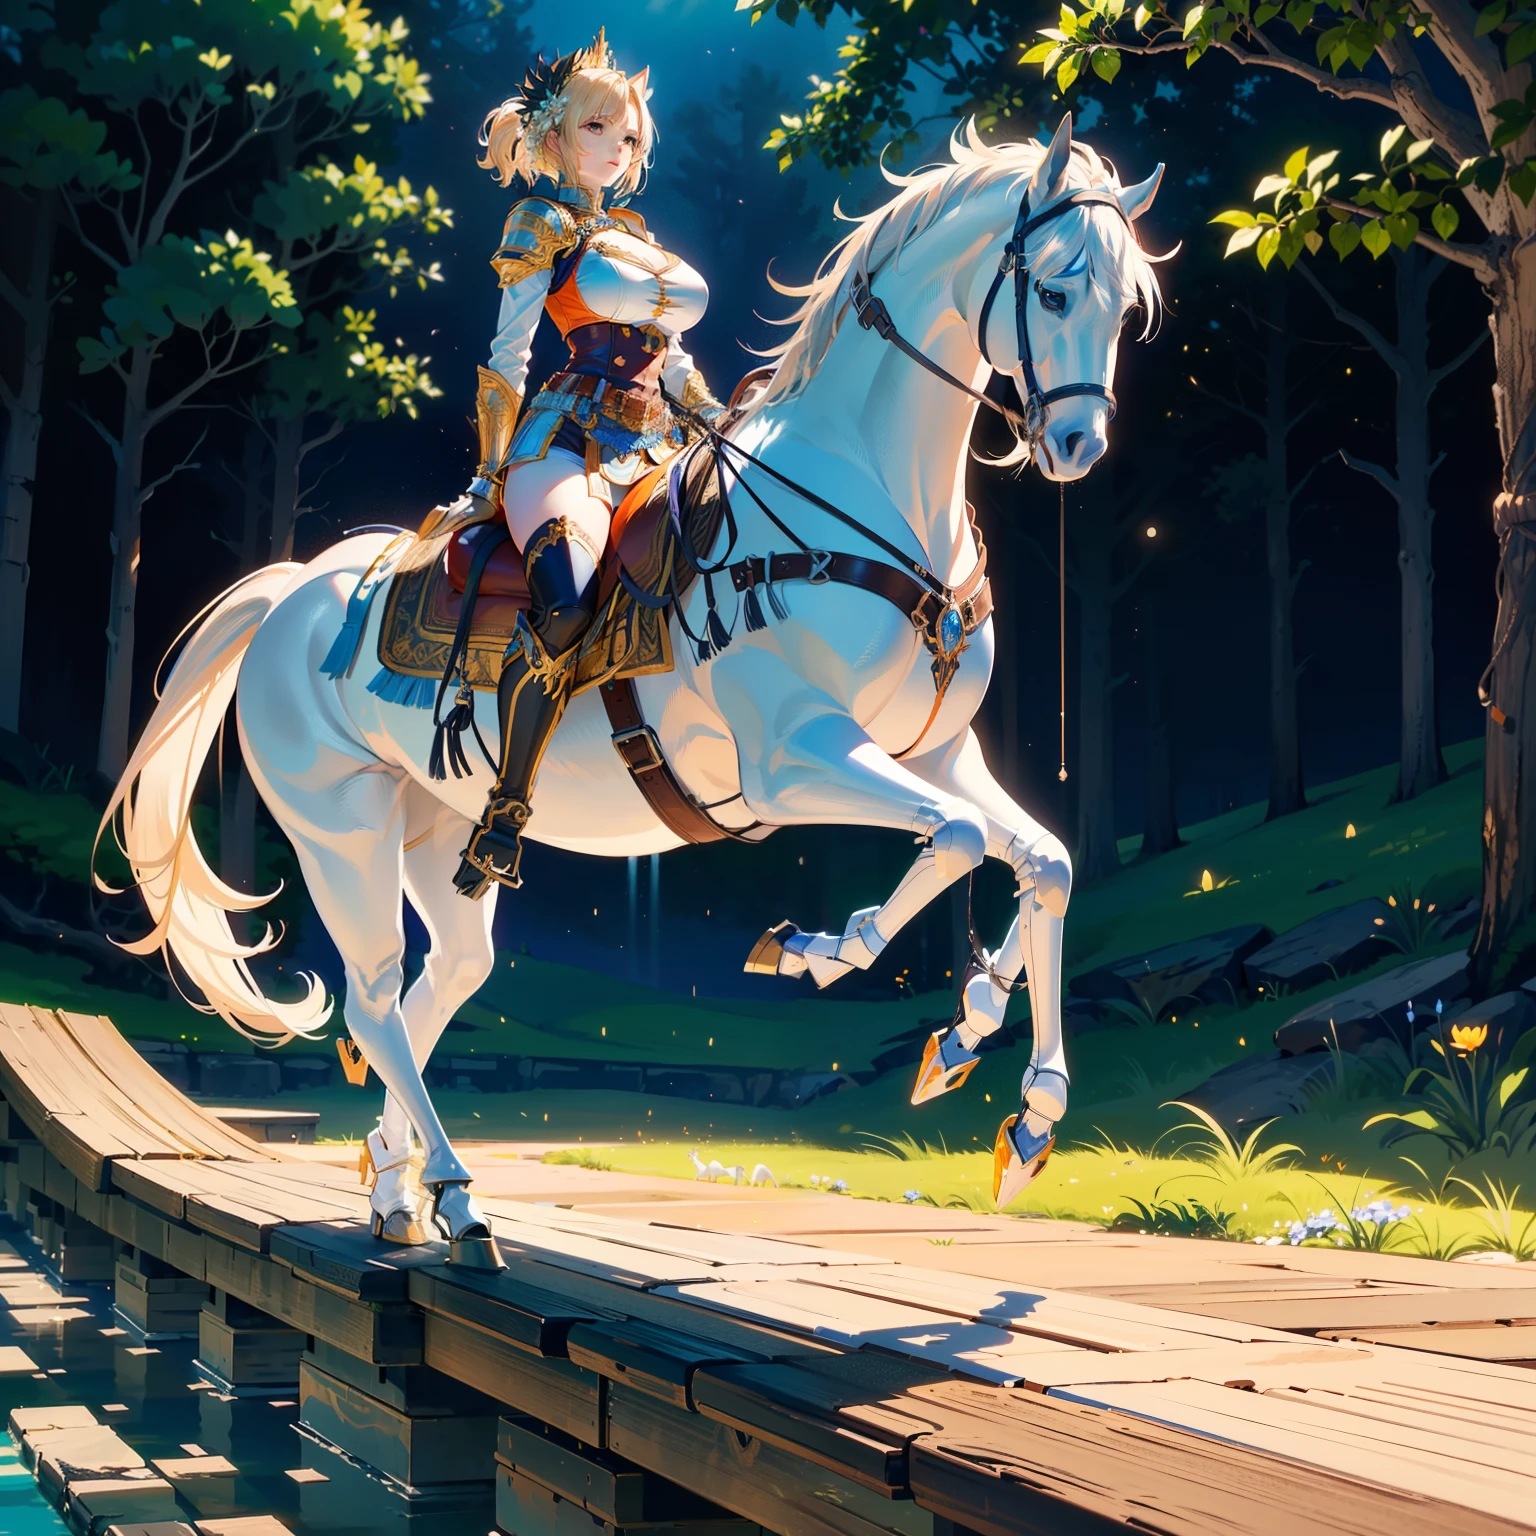 ((beste Qualität)), ((Anime-Meisterwerk)), (ausführlich), Filmische Beleuchtung, lebendige Farbe, 8k, Perfektes Gesicht, Große Brust, a female knight riding a walking Weißes Pferd in the woods+, (Blaue Rüstung, orangefarbene Shorts, Lederstiefel), (Weißes Pferd, Sattel, Steigbügel, reins: 1.5)++, Wald, Landschaft, Von der Seite: 1.5, Anatomisch korrekt,